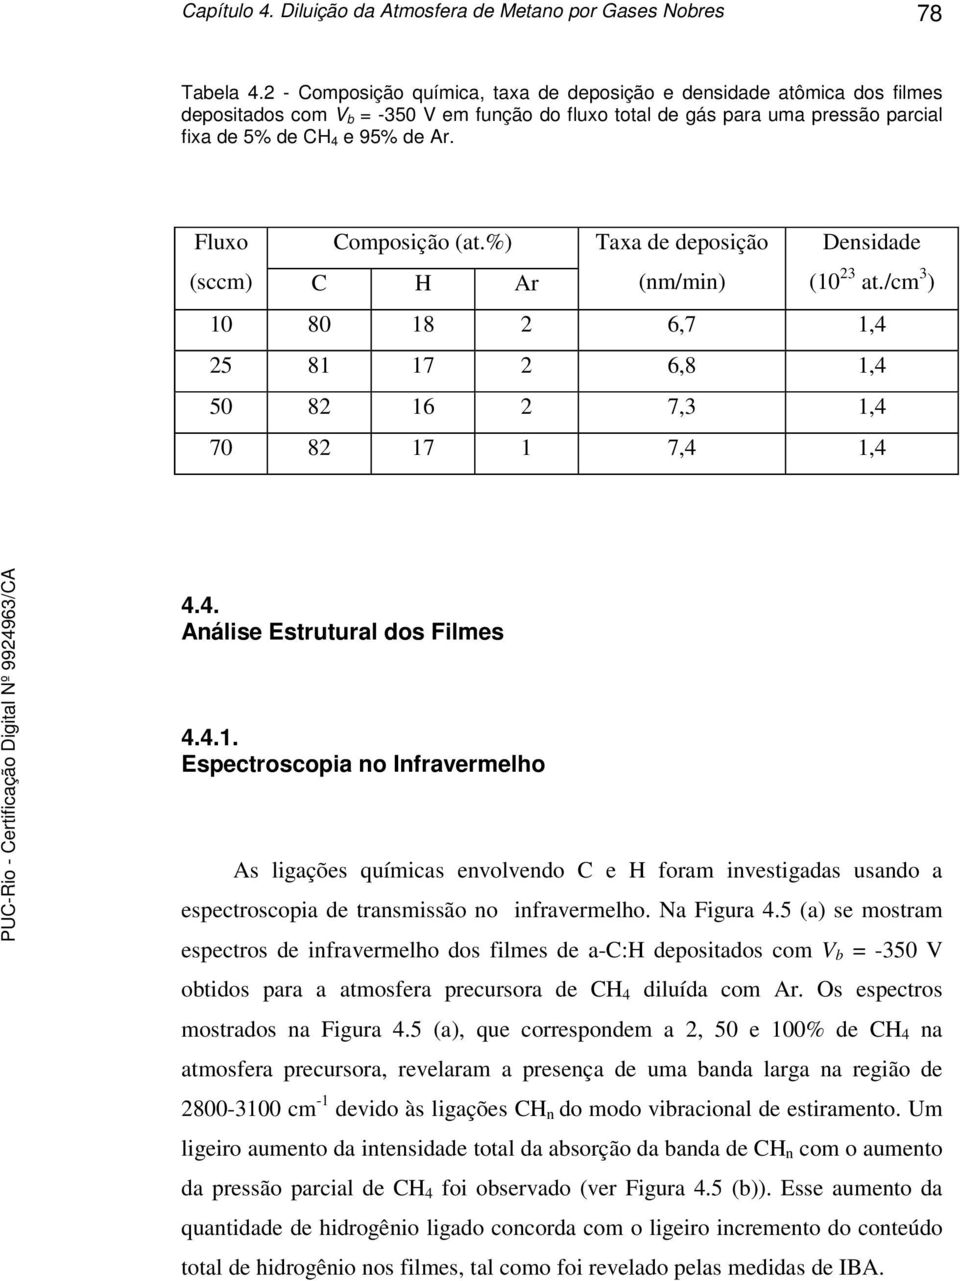 Fluxo Composição (at.%) Taxa de deposição Densidade (sccm) C H Ar (nm/min) (10 23 at./cm 3 ) 10 80 18 2 6,7 1,4 25 81 17 2 6,8 1,4 50 82 16 2 7,3 1,4 70 82 17 1 7,4 1,4 4.4. Análise Estrutural dos Filmes 4.